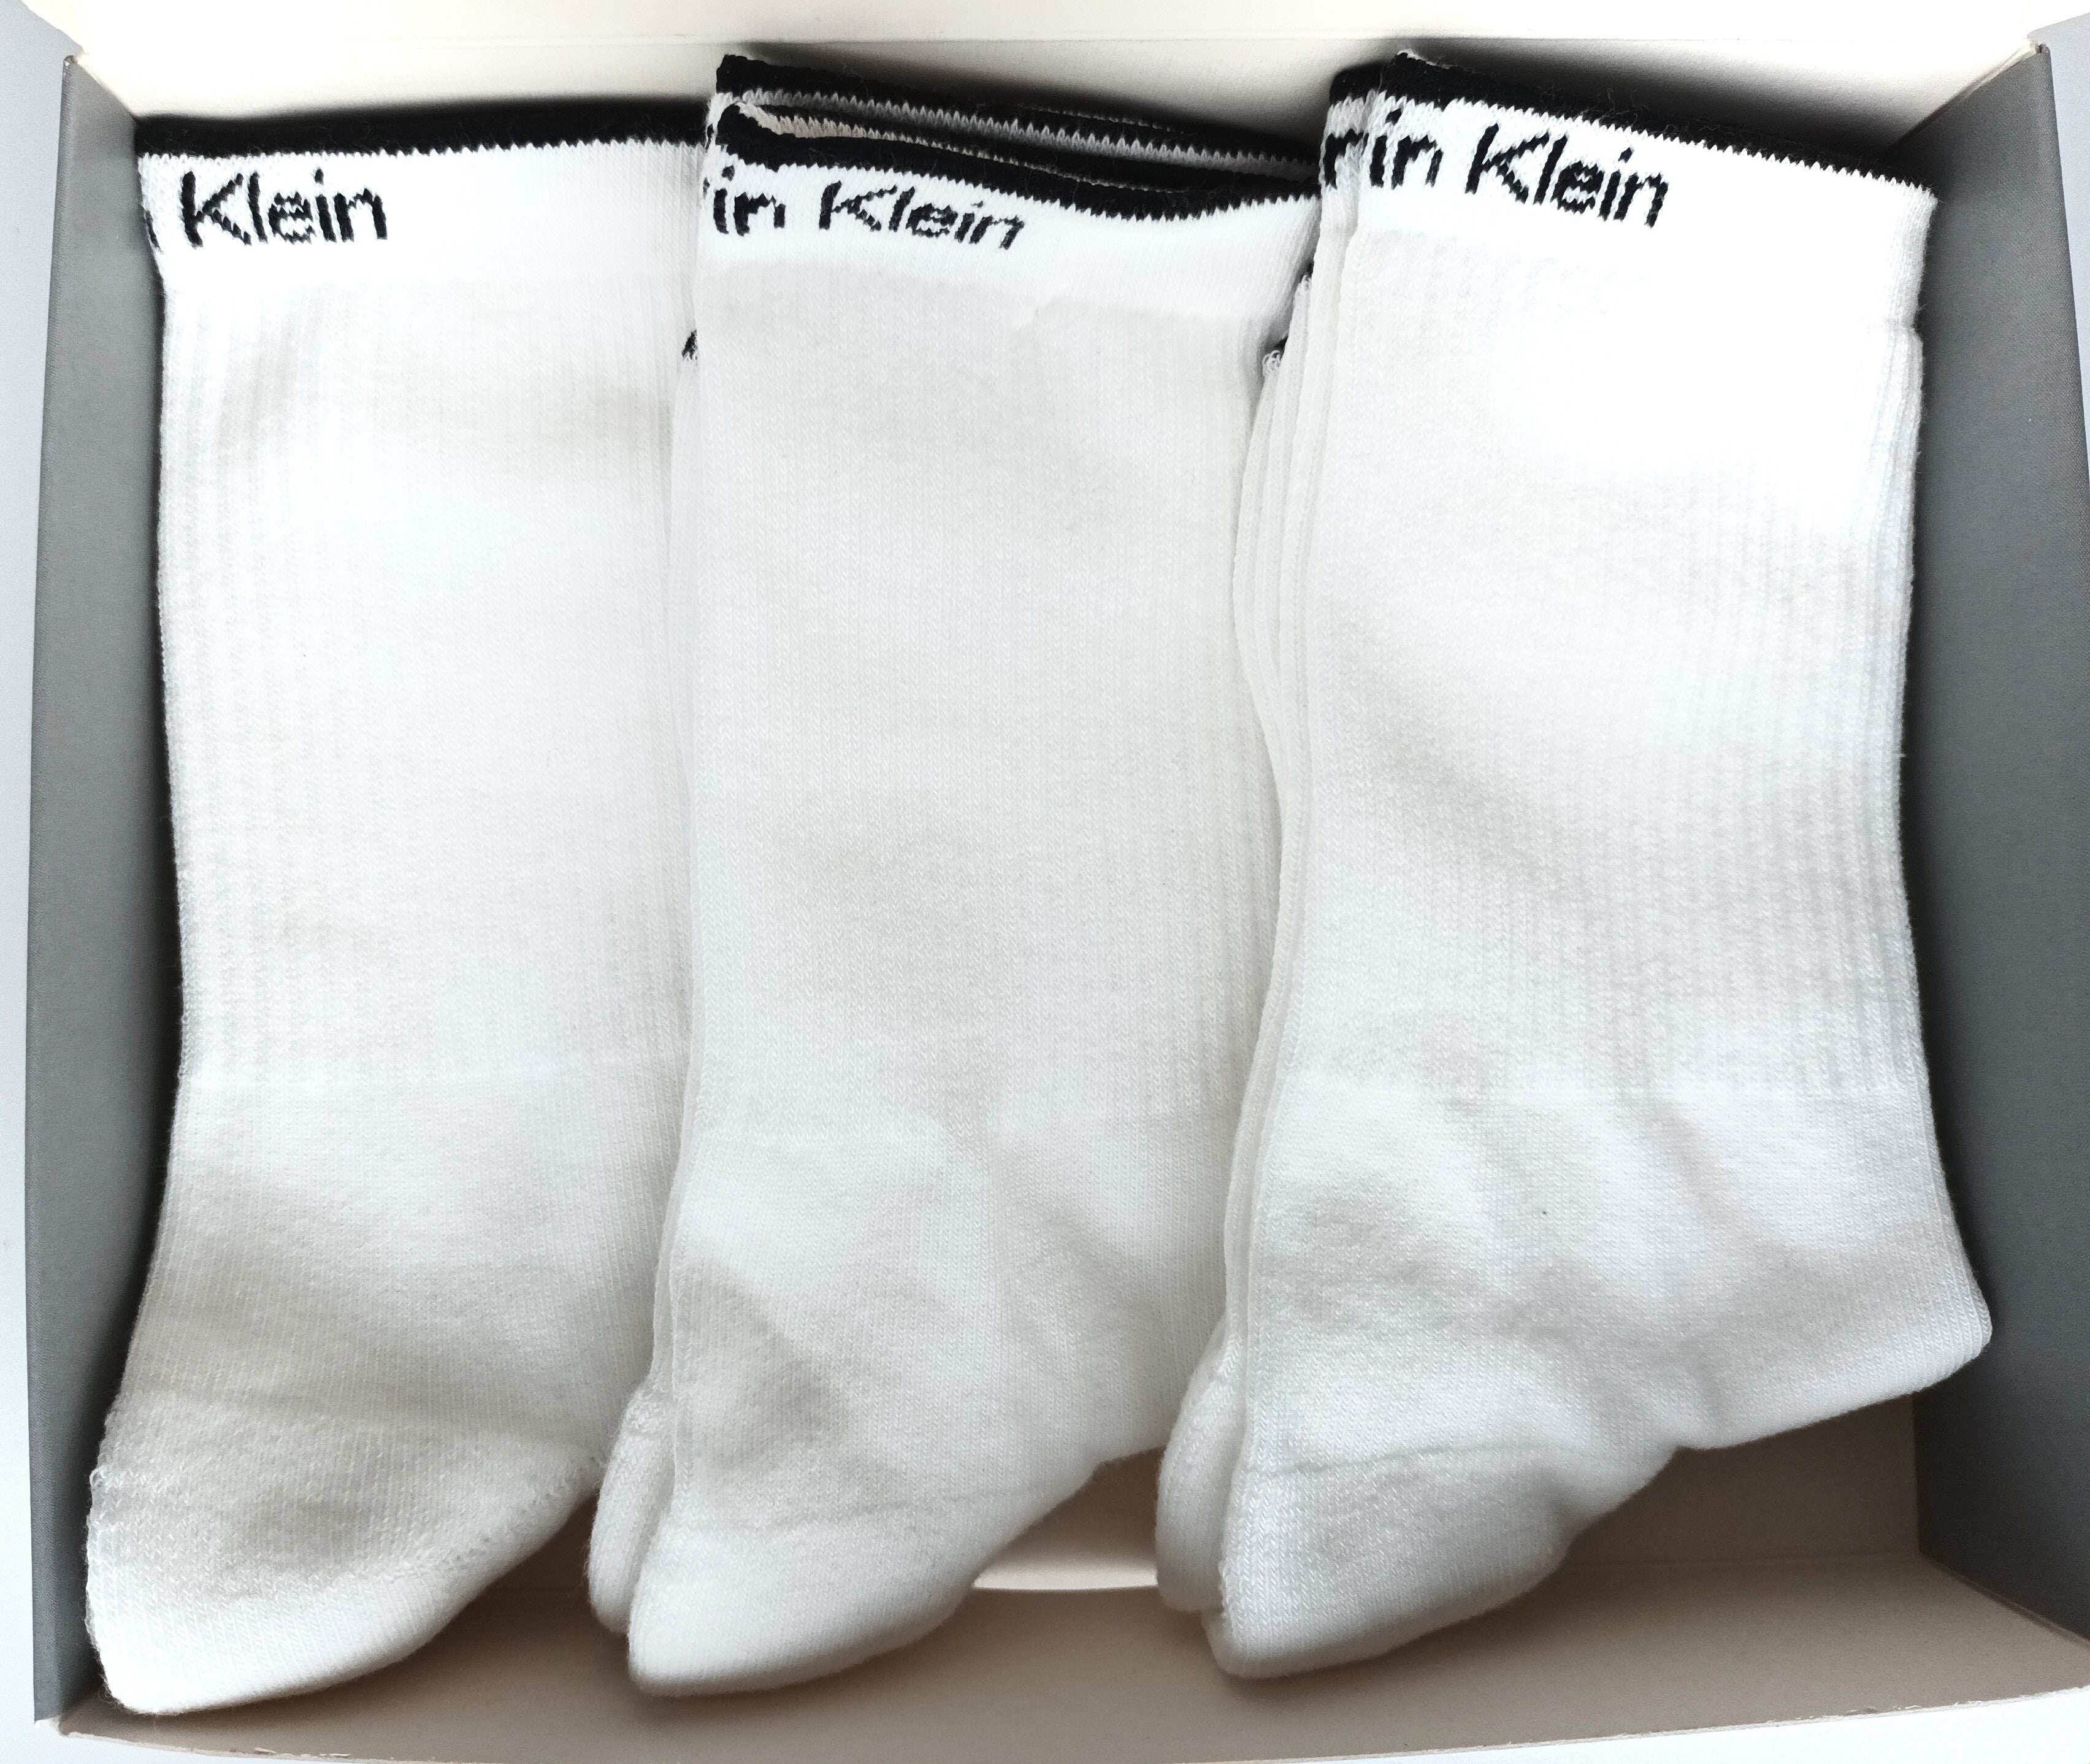 Weiße Tennissocken von Calvin Klein | 3-Paar für Frauen